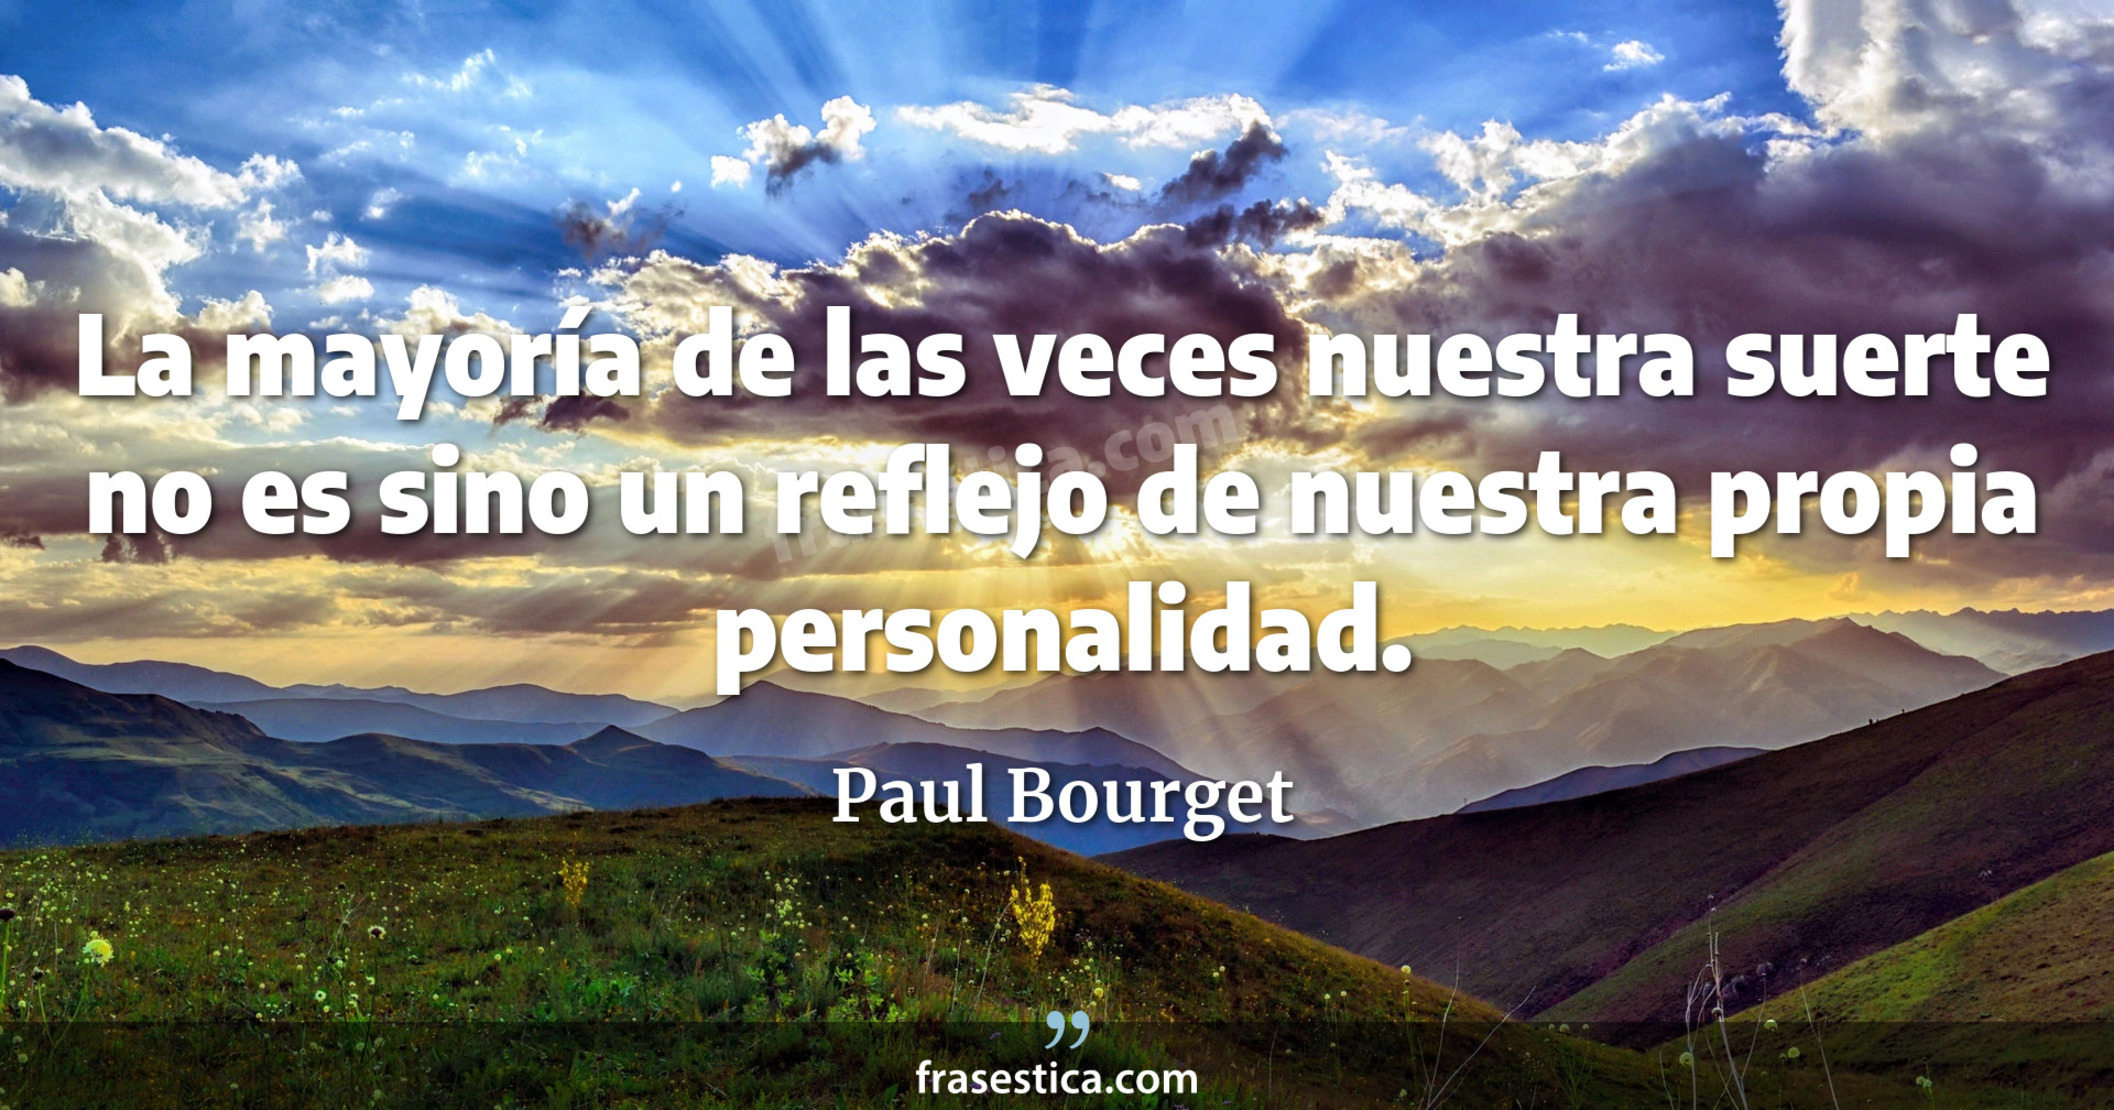 La mayoría de las veces nuestra suerte no es sino un reflejo de nuestra propia personalidad. - Paul Bourget